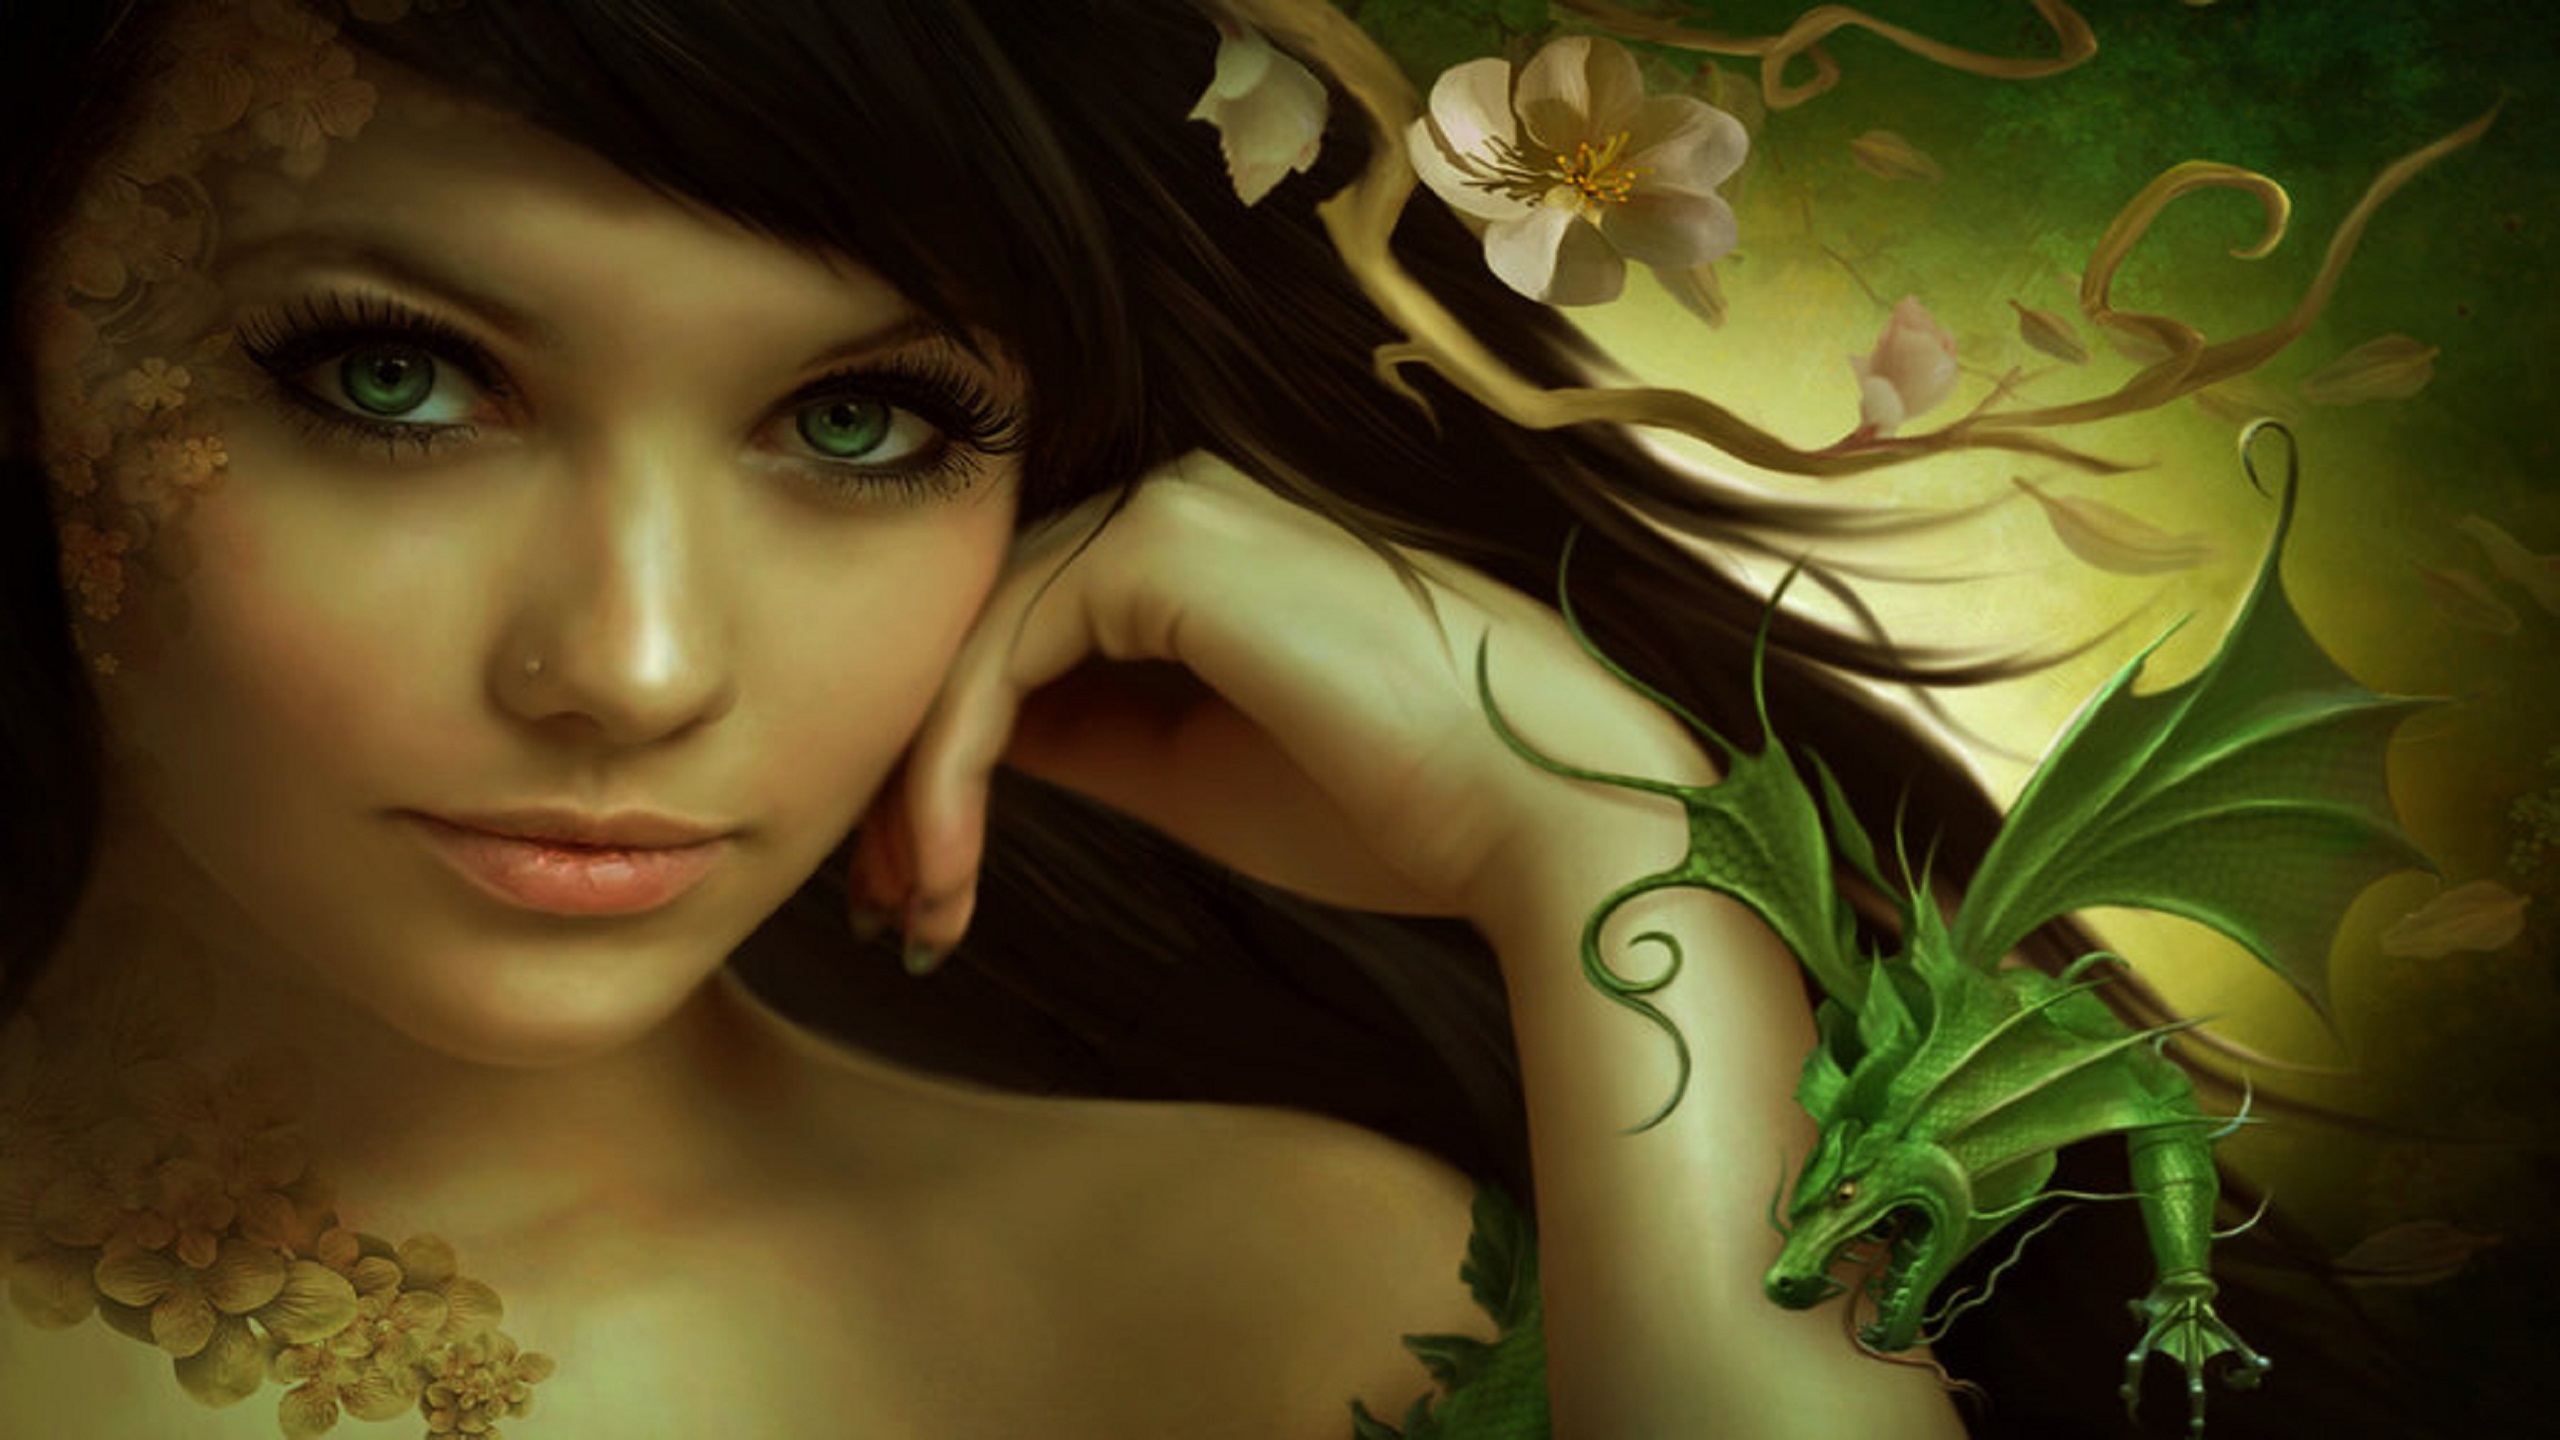 За мои зеленые глаза называешь меня колдуньей. Красивые рисунки в стиле фэнтези Елены Дудиной. Красивые девушки фэнтези. Фея с зелеными глазами. Портрет в стиле фэнтези.